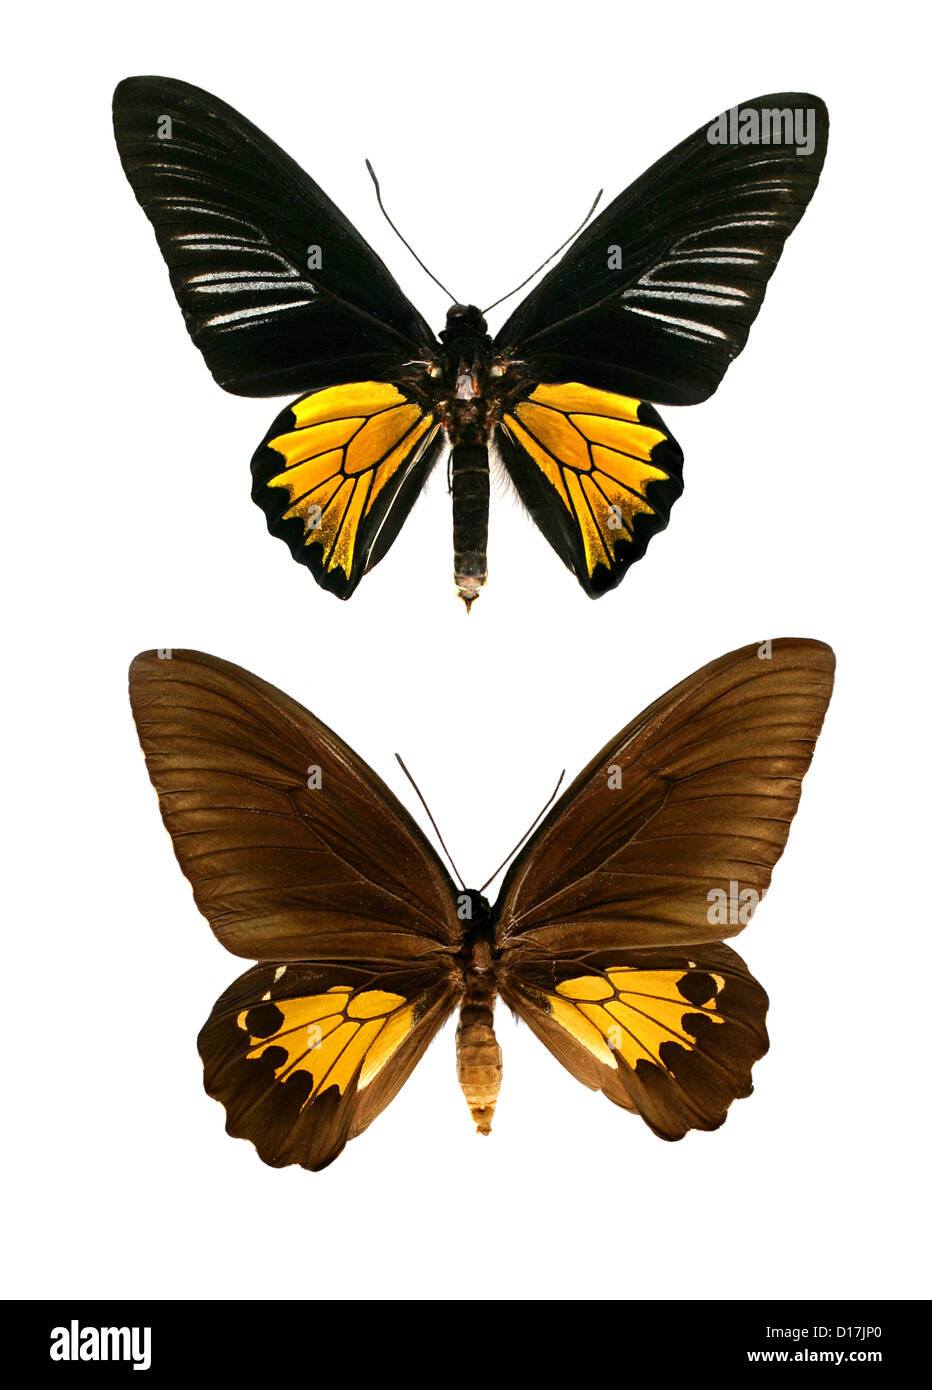 Gemeinsamen Birdwing Schmetterlinge, Troides Helena Cerberus, Papilionidae, Lepidoptera. Indien und Asien. Männliche (oben), weiblich (unten). Stockfoto